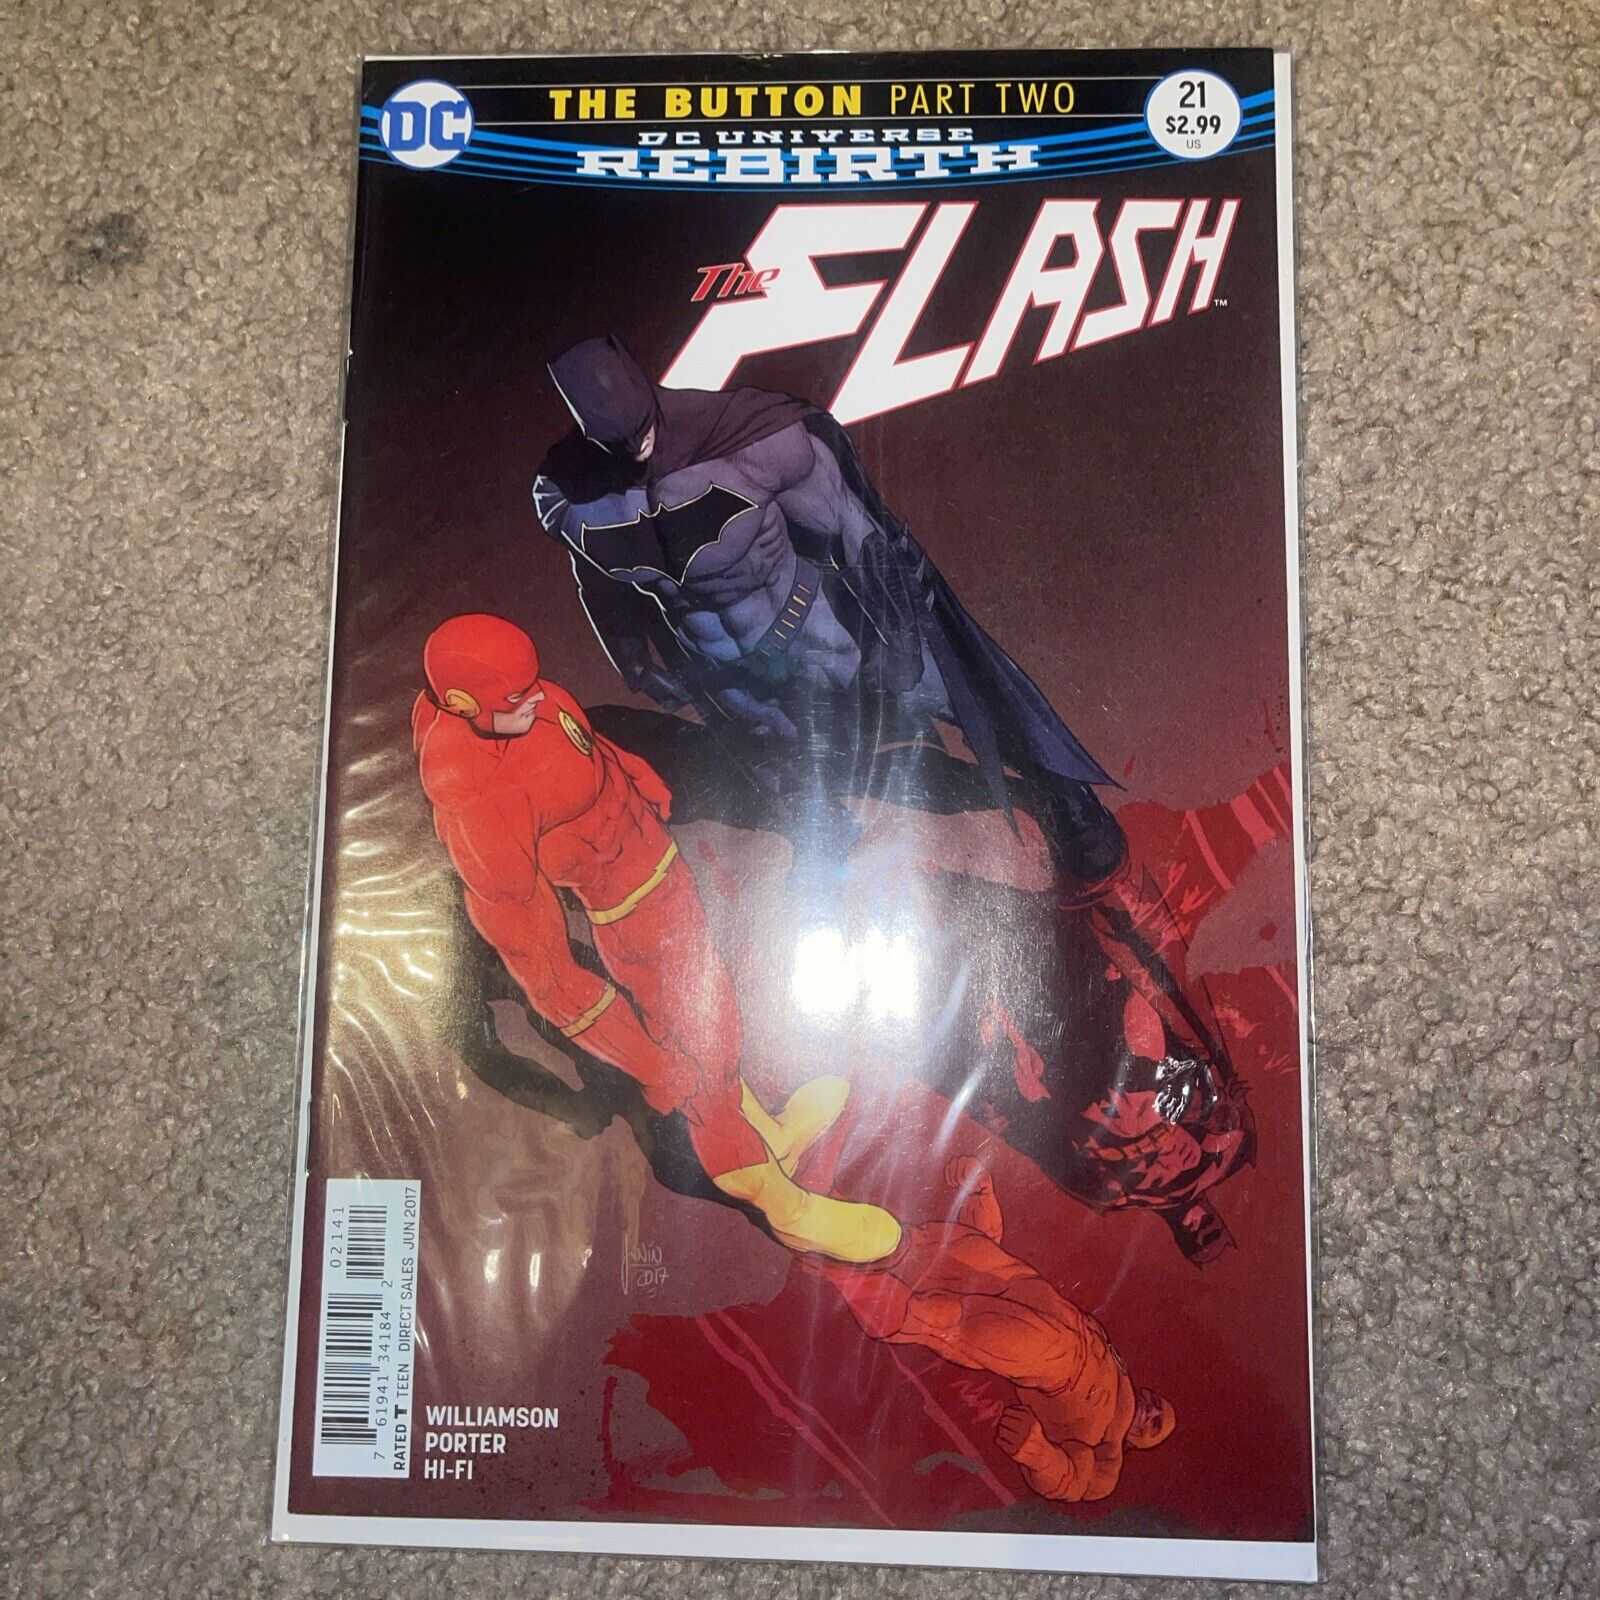 The Flash #21 (DC Comics June 2017)